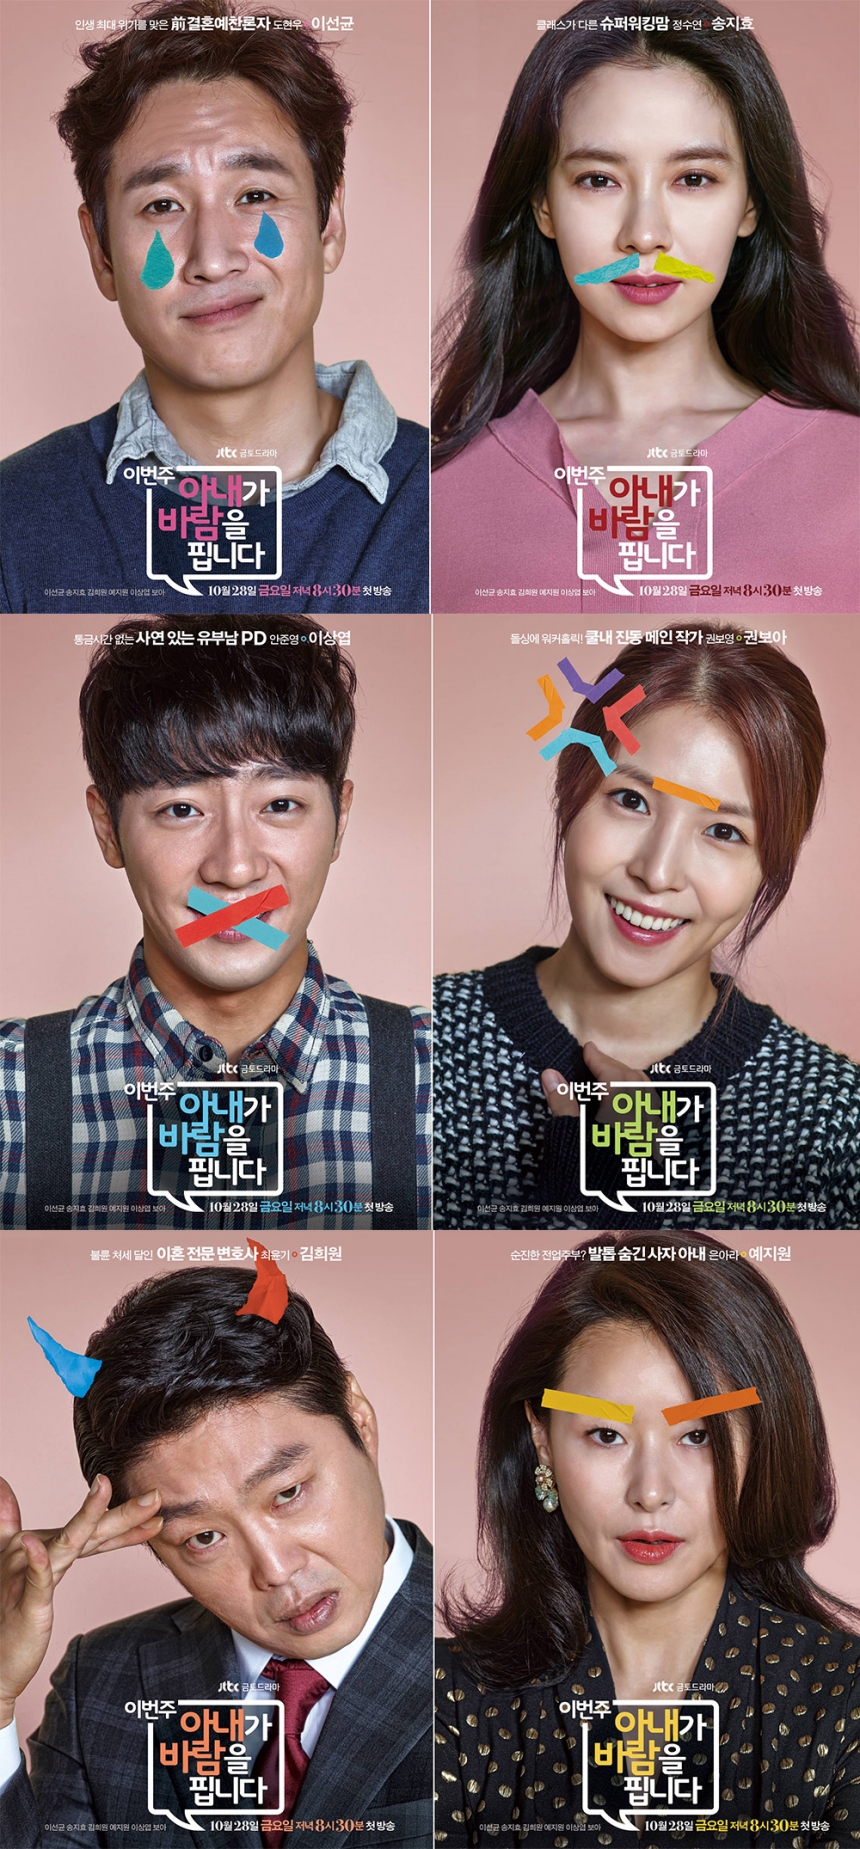 ‘이번 주 아내가 바람을 핍니다’ 캐릭터 포스터 / JTBC-드라마 하우스